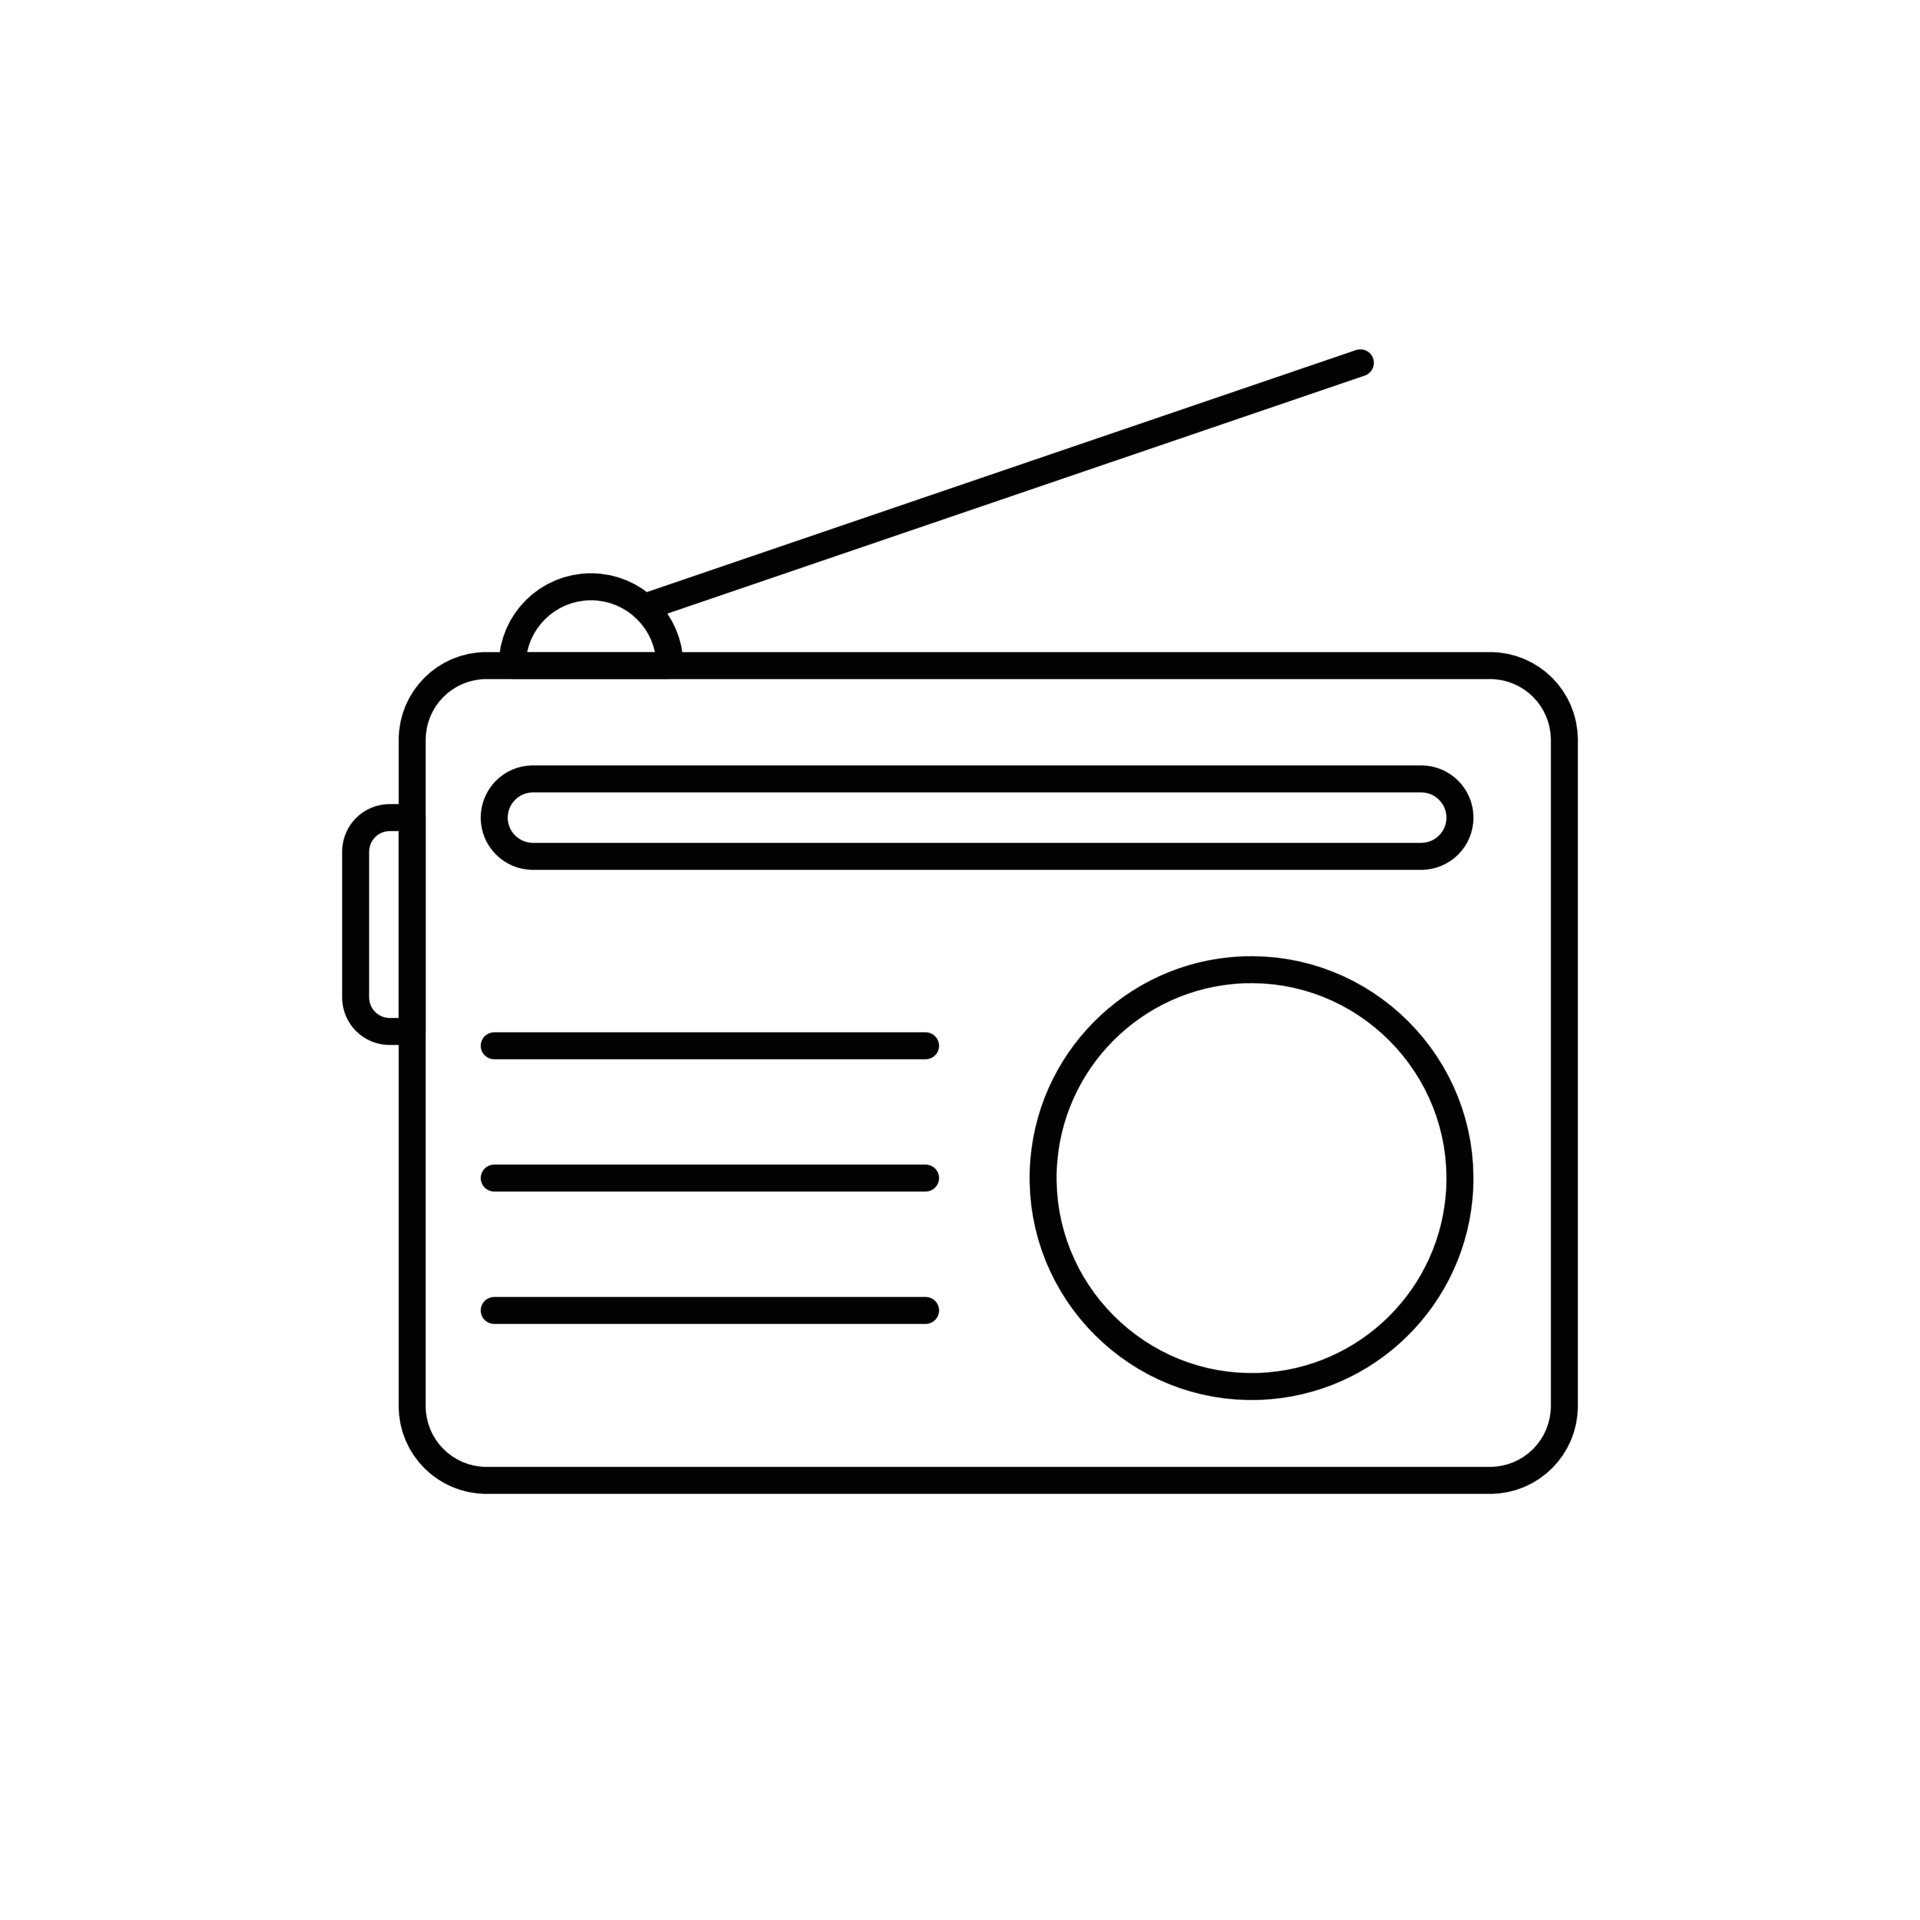 Icono De Radio De Digitaces, Estilo Plano Ilustración del Vector